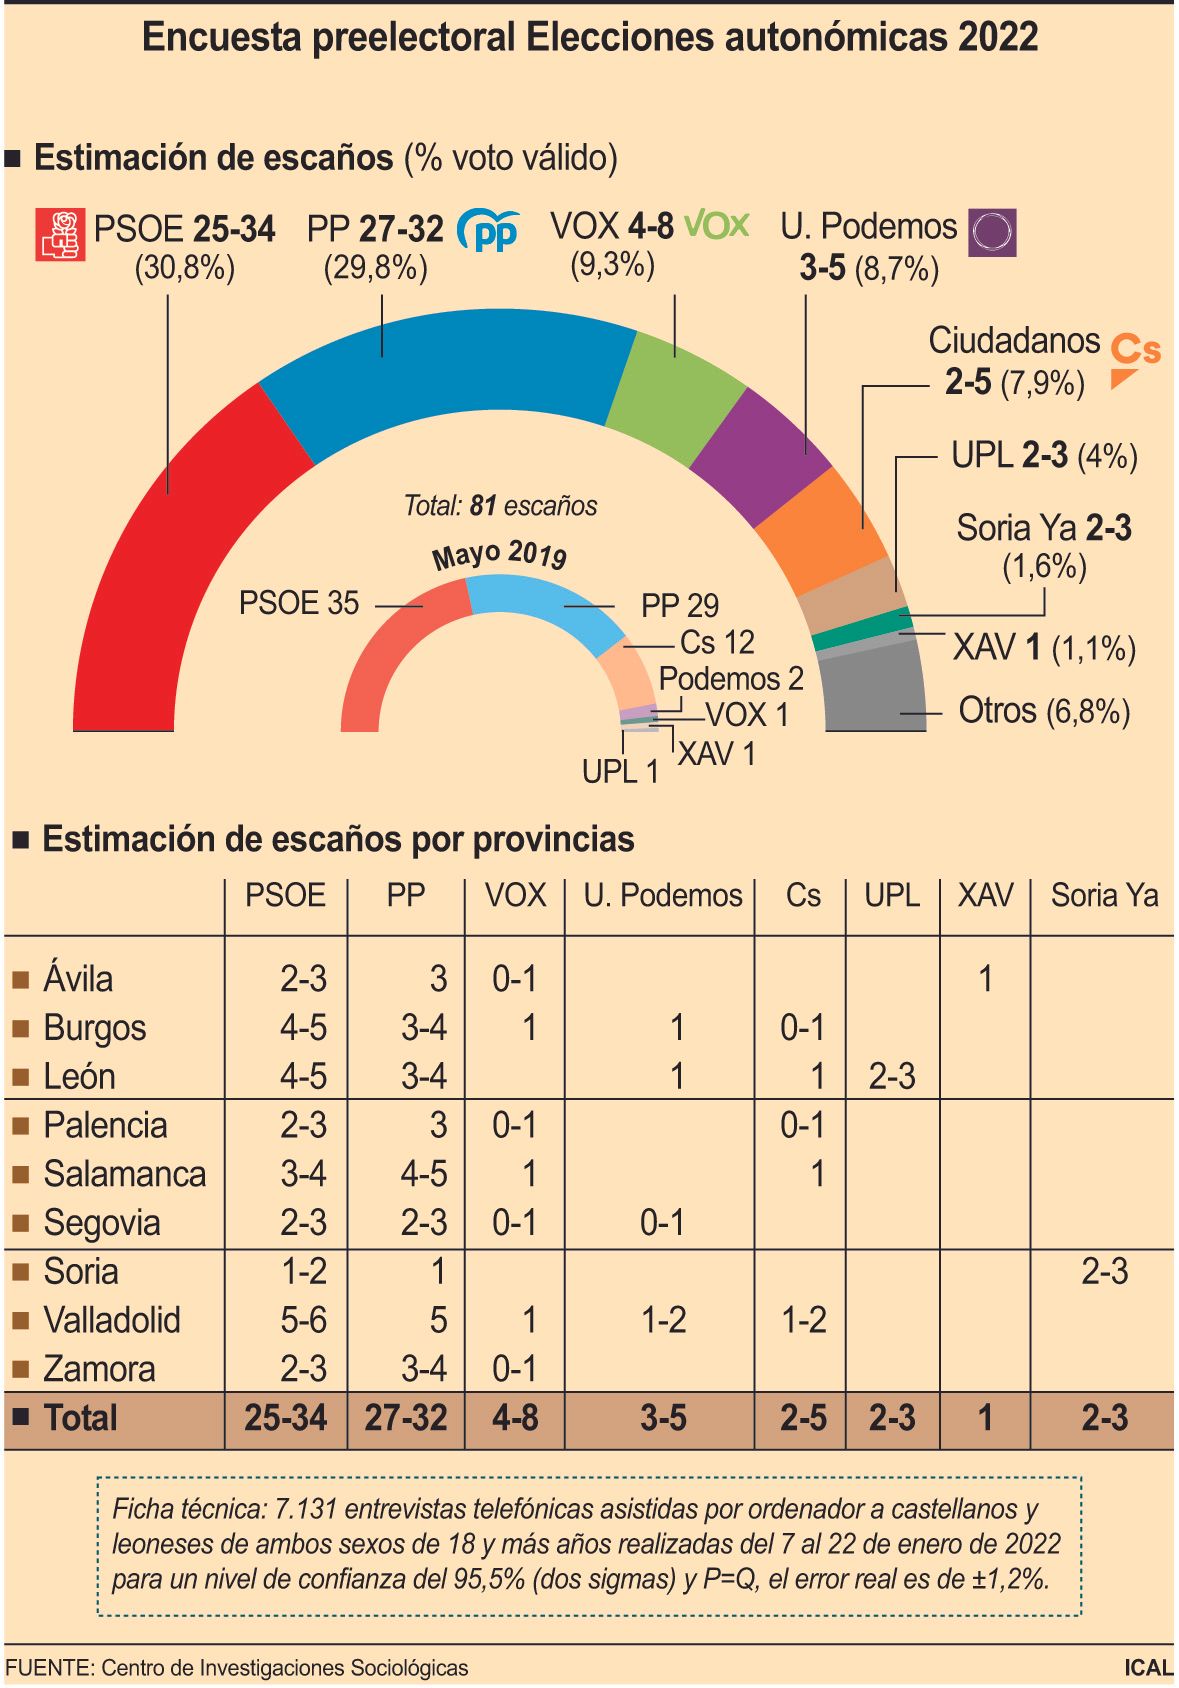 Encuesta preelectoral Elecciones autonómicas 2022 (10cmx14cm)